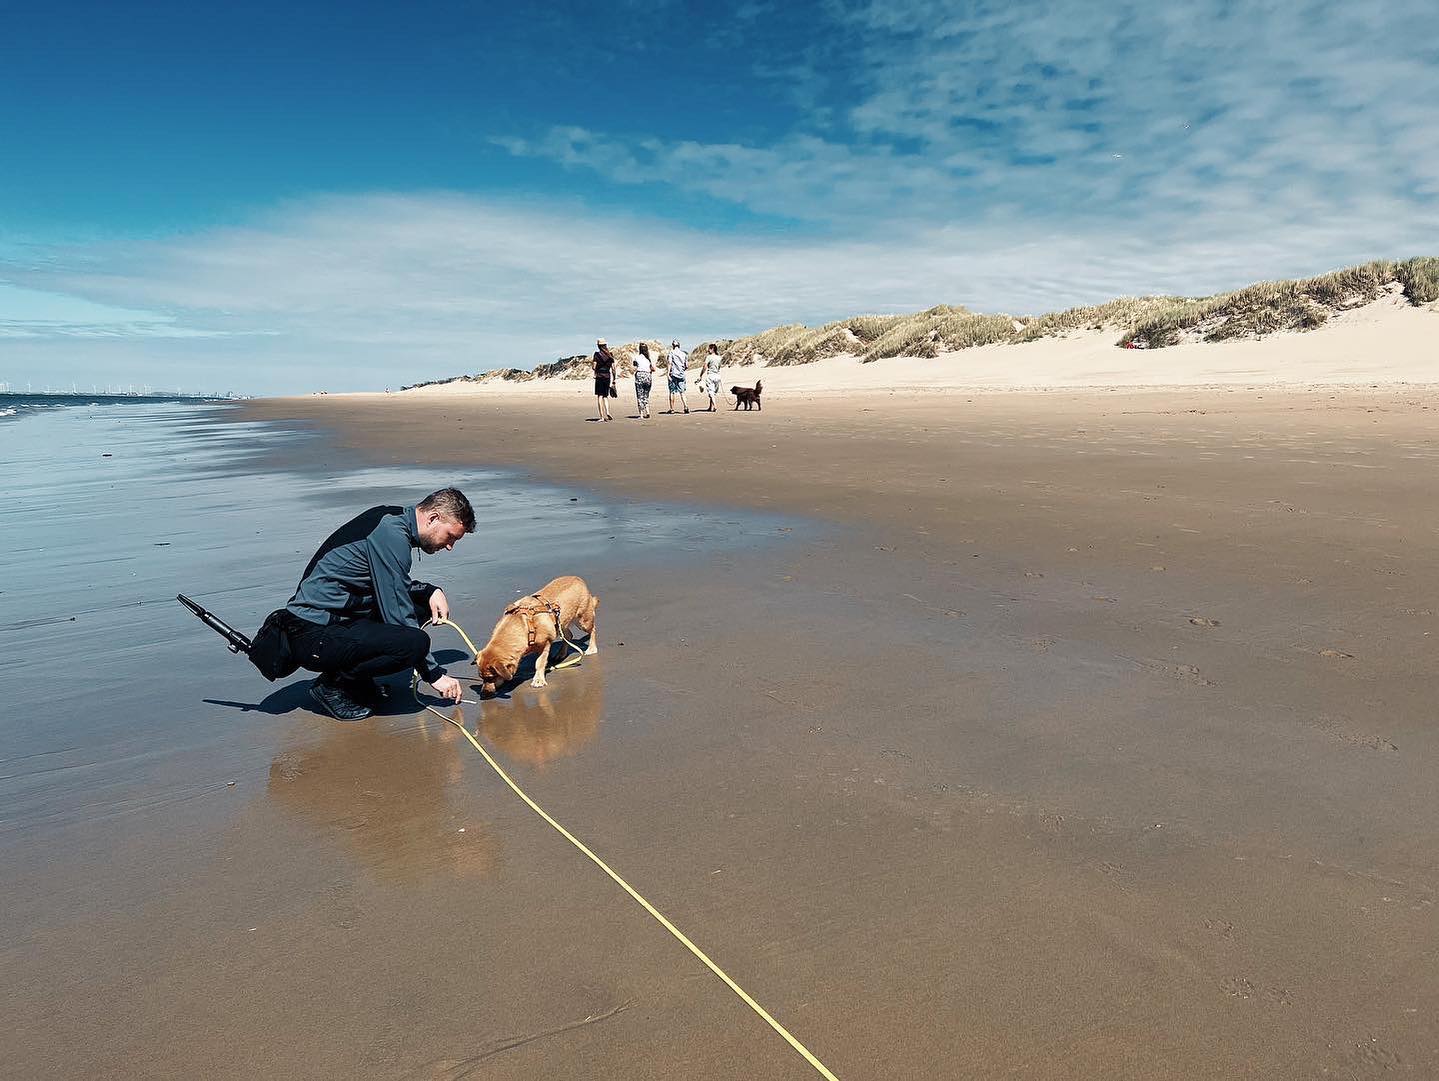 _fernweh 🤍 
#urlaubmithund #holland #niederlande #netherlands #nordsee #dogsofinstagram #strand #reisenmithund